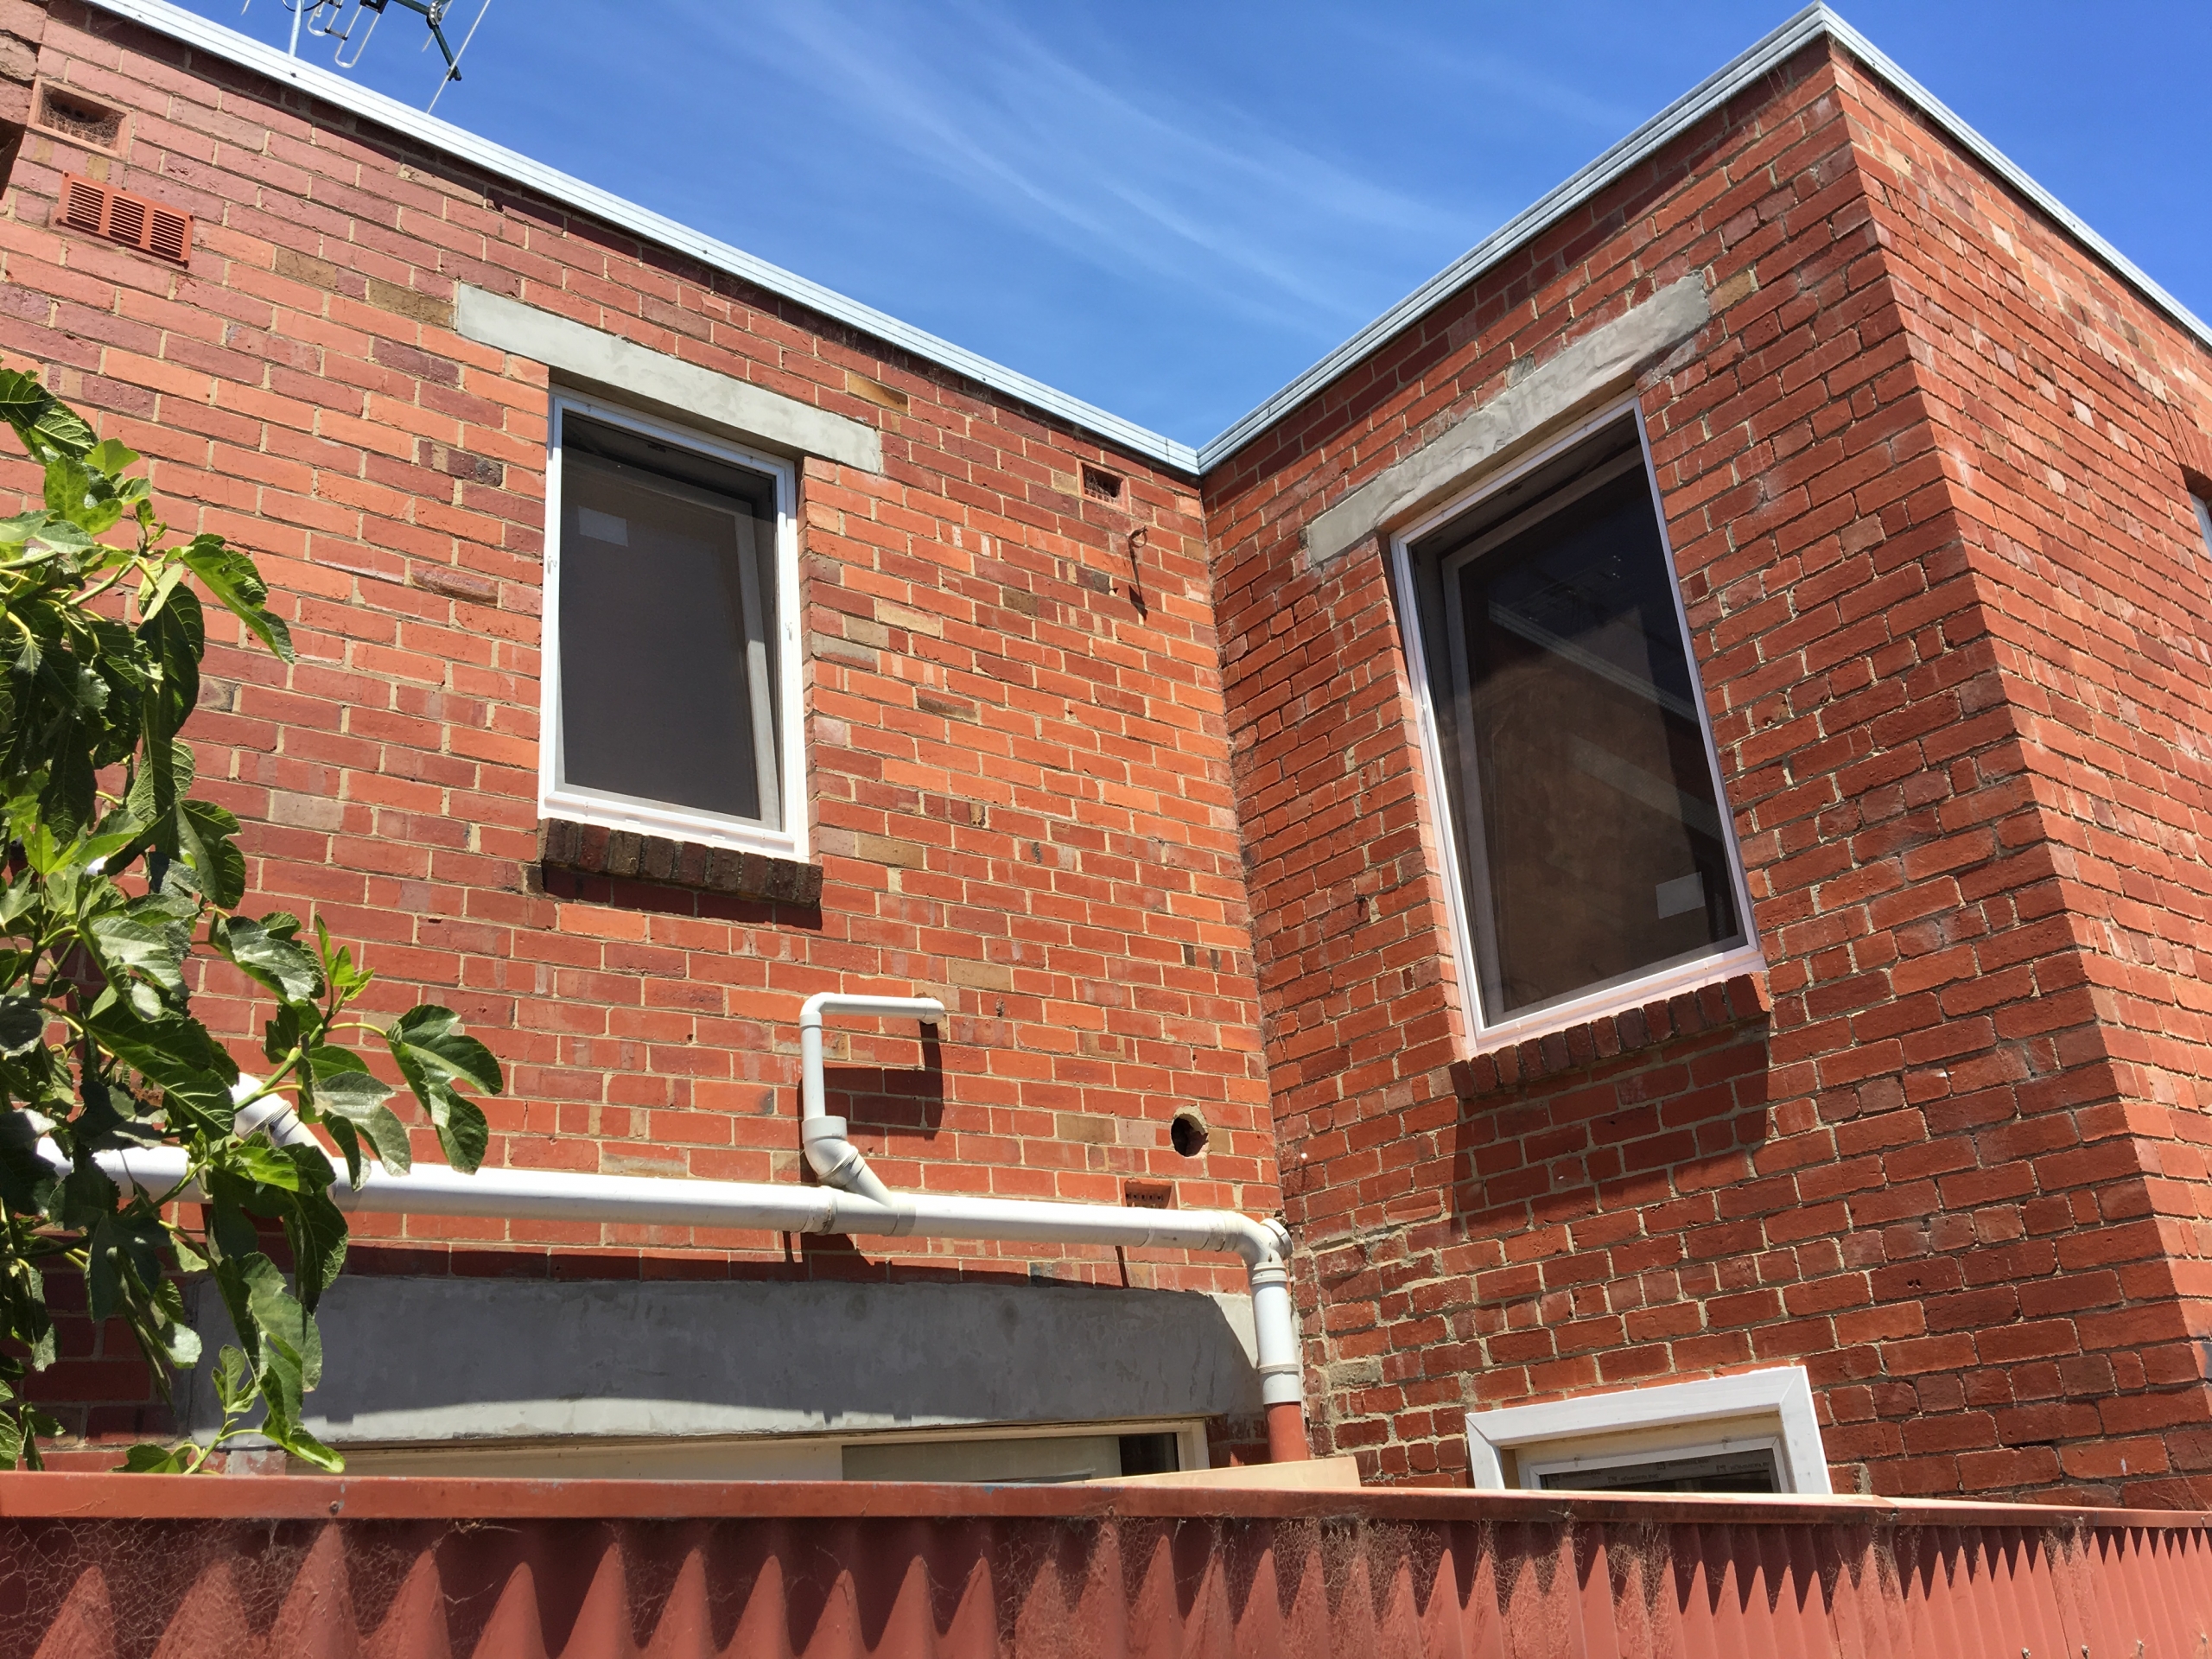 Double glazing windows in Camberwell, Victoria, Australia